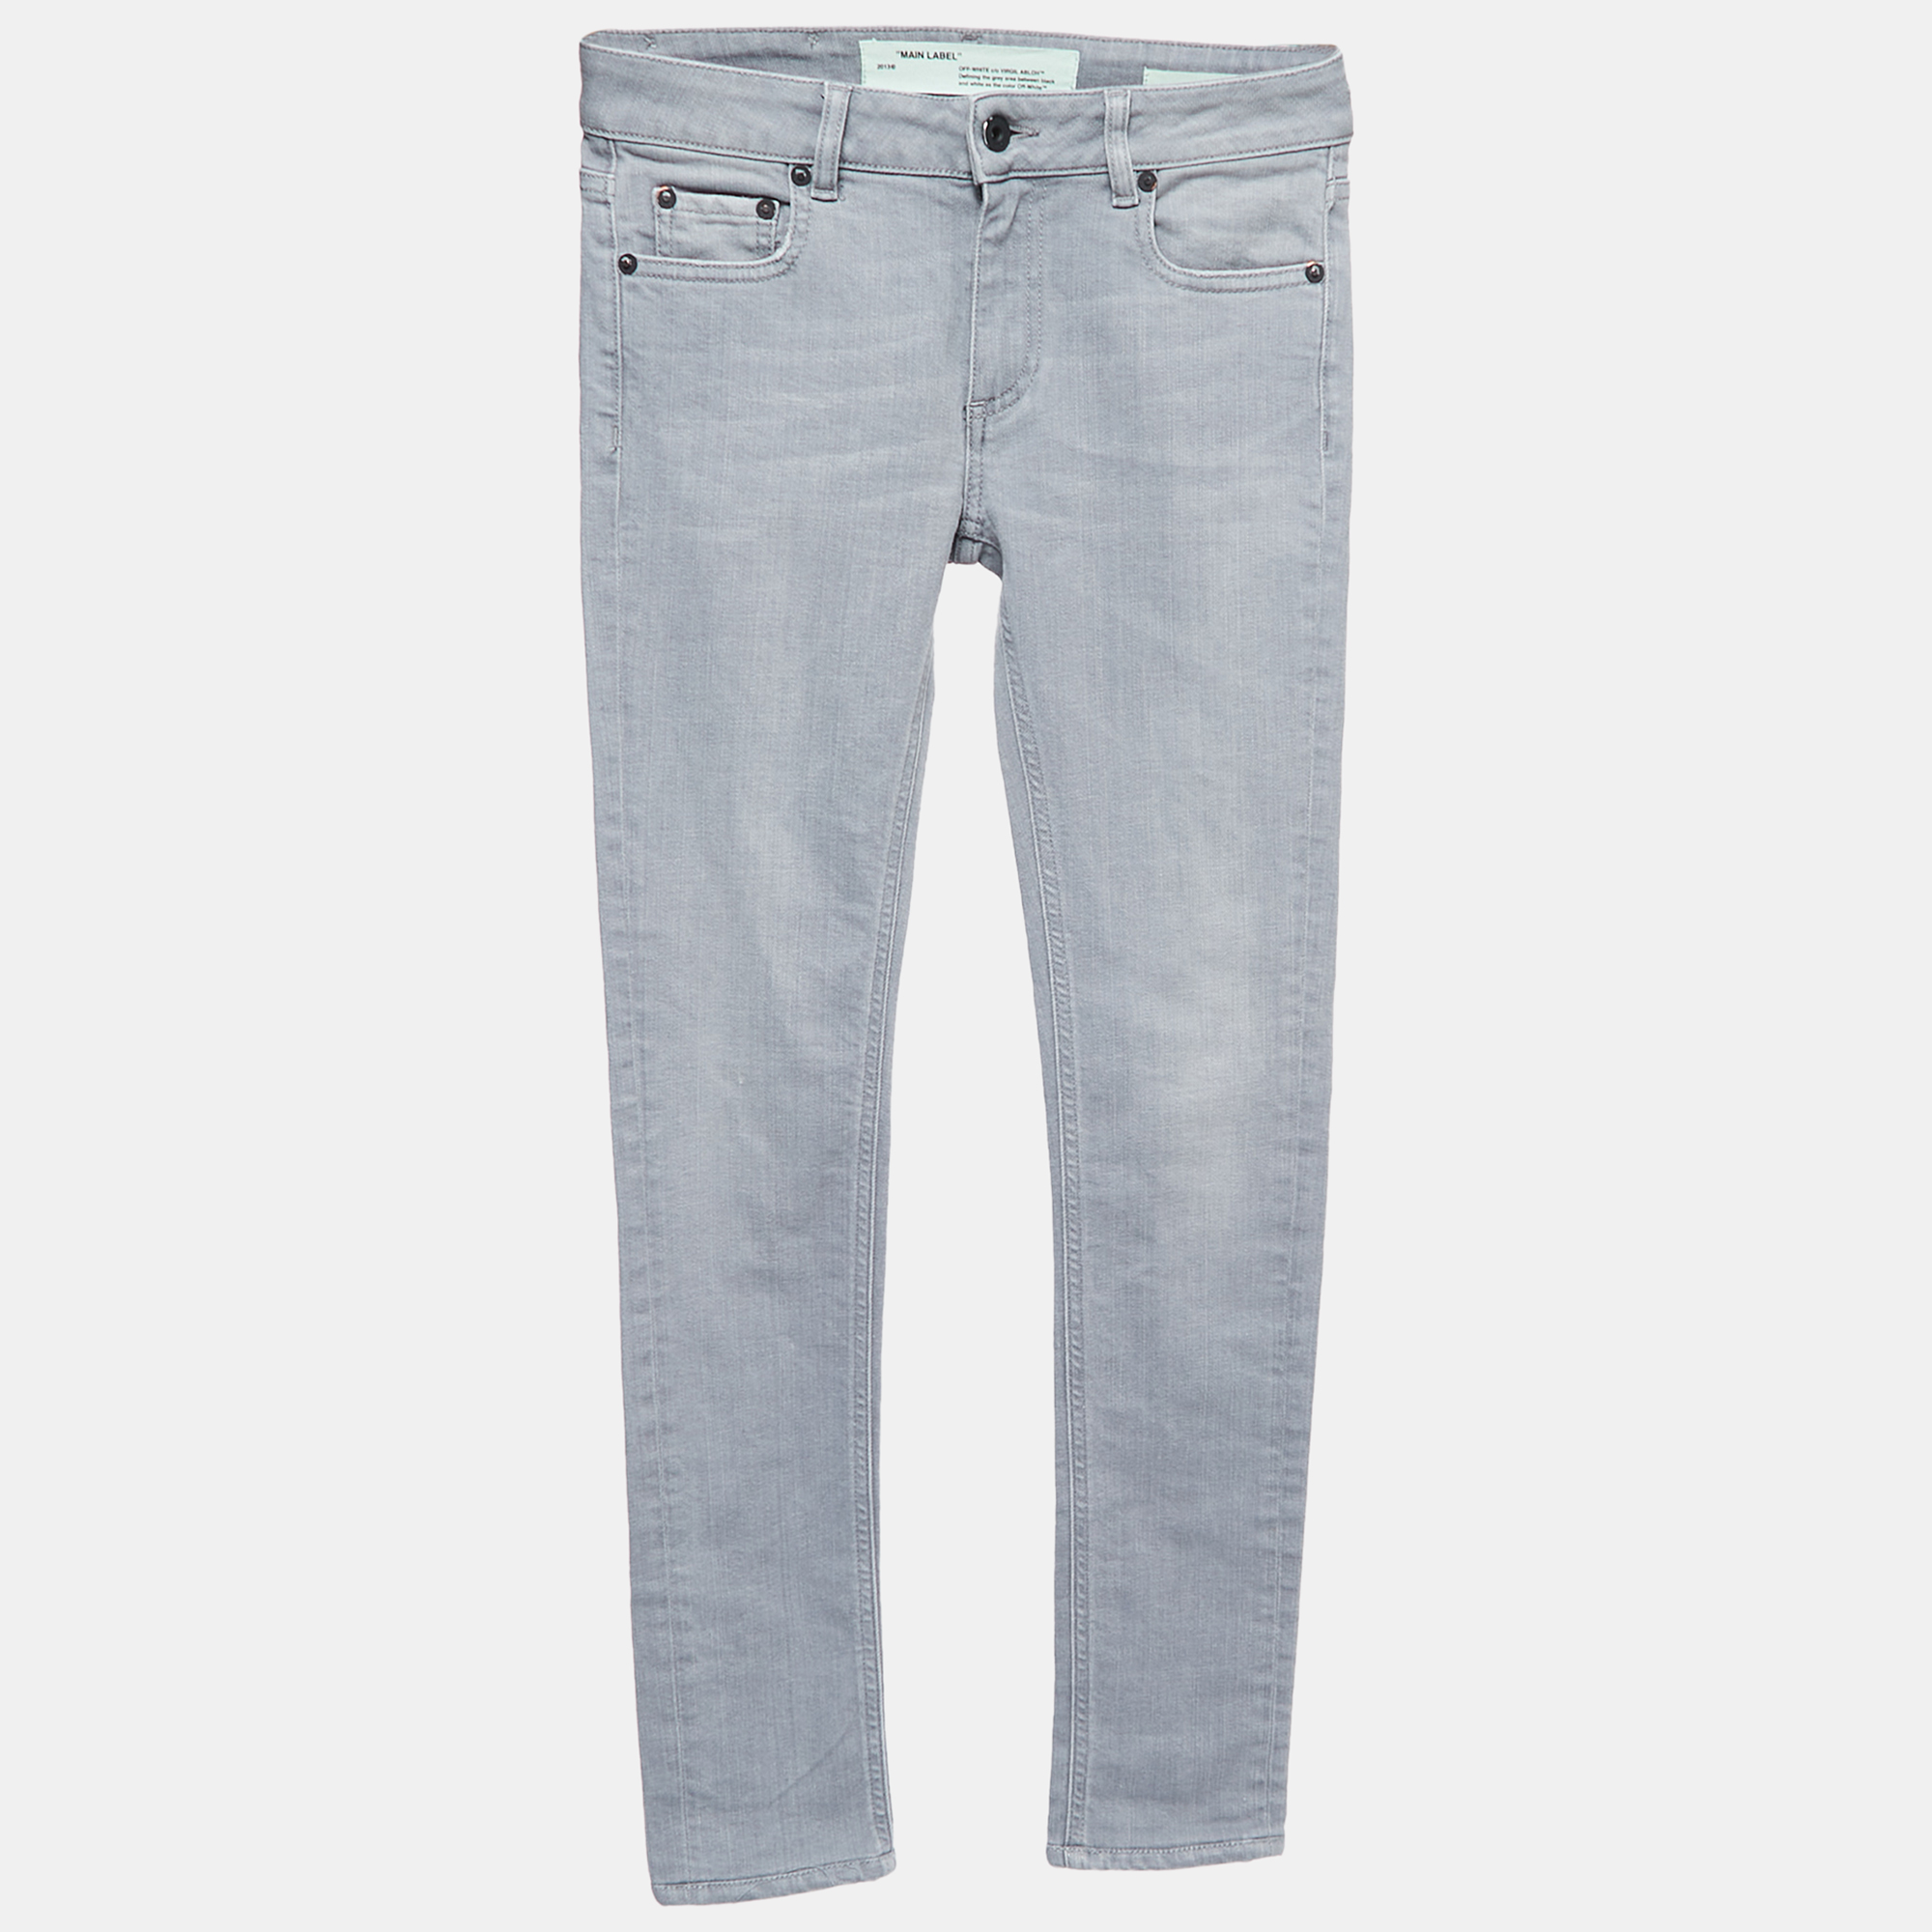 Off-White Grey Denim Skinny Jeans S Waist 26